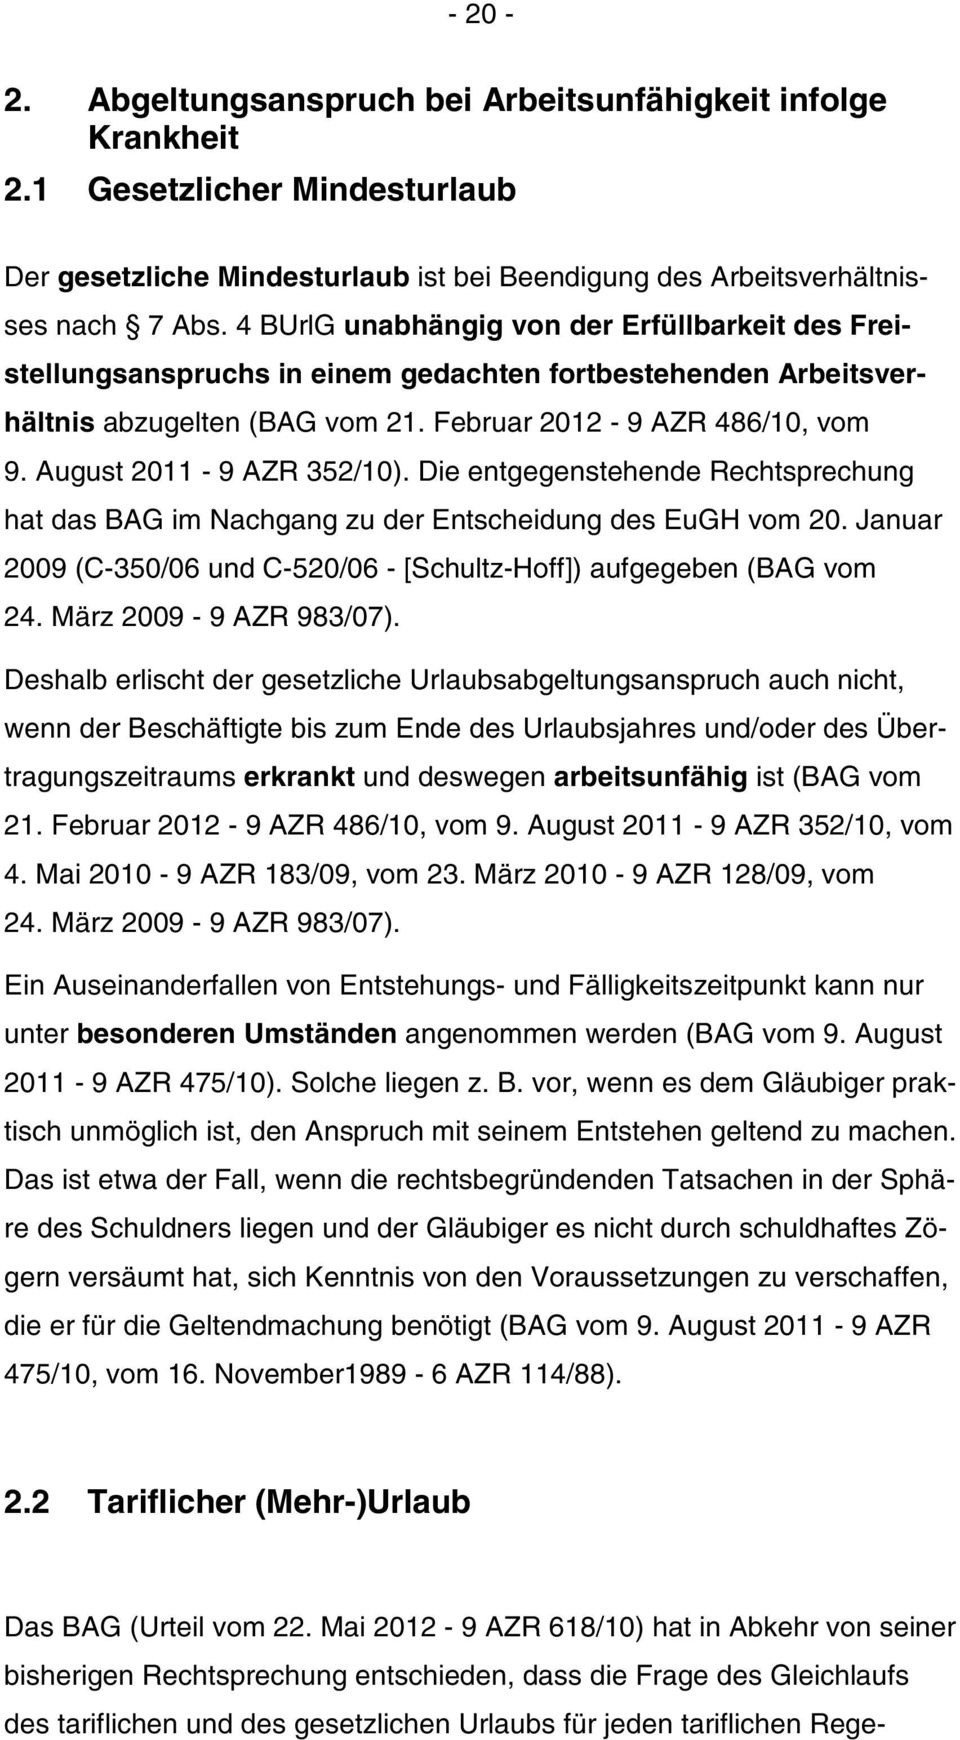 August 2011-9 AZR 352/10). Die entgegenstehende Rechtsprechung hat das BAG im Nachgang zu der Entscheidung des EuGH vom 20. Januar 2009 (C-350/06 und C-520/06 - [Schultz-Hoff]) aufgegeben (BAG vom 24.